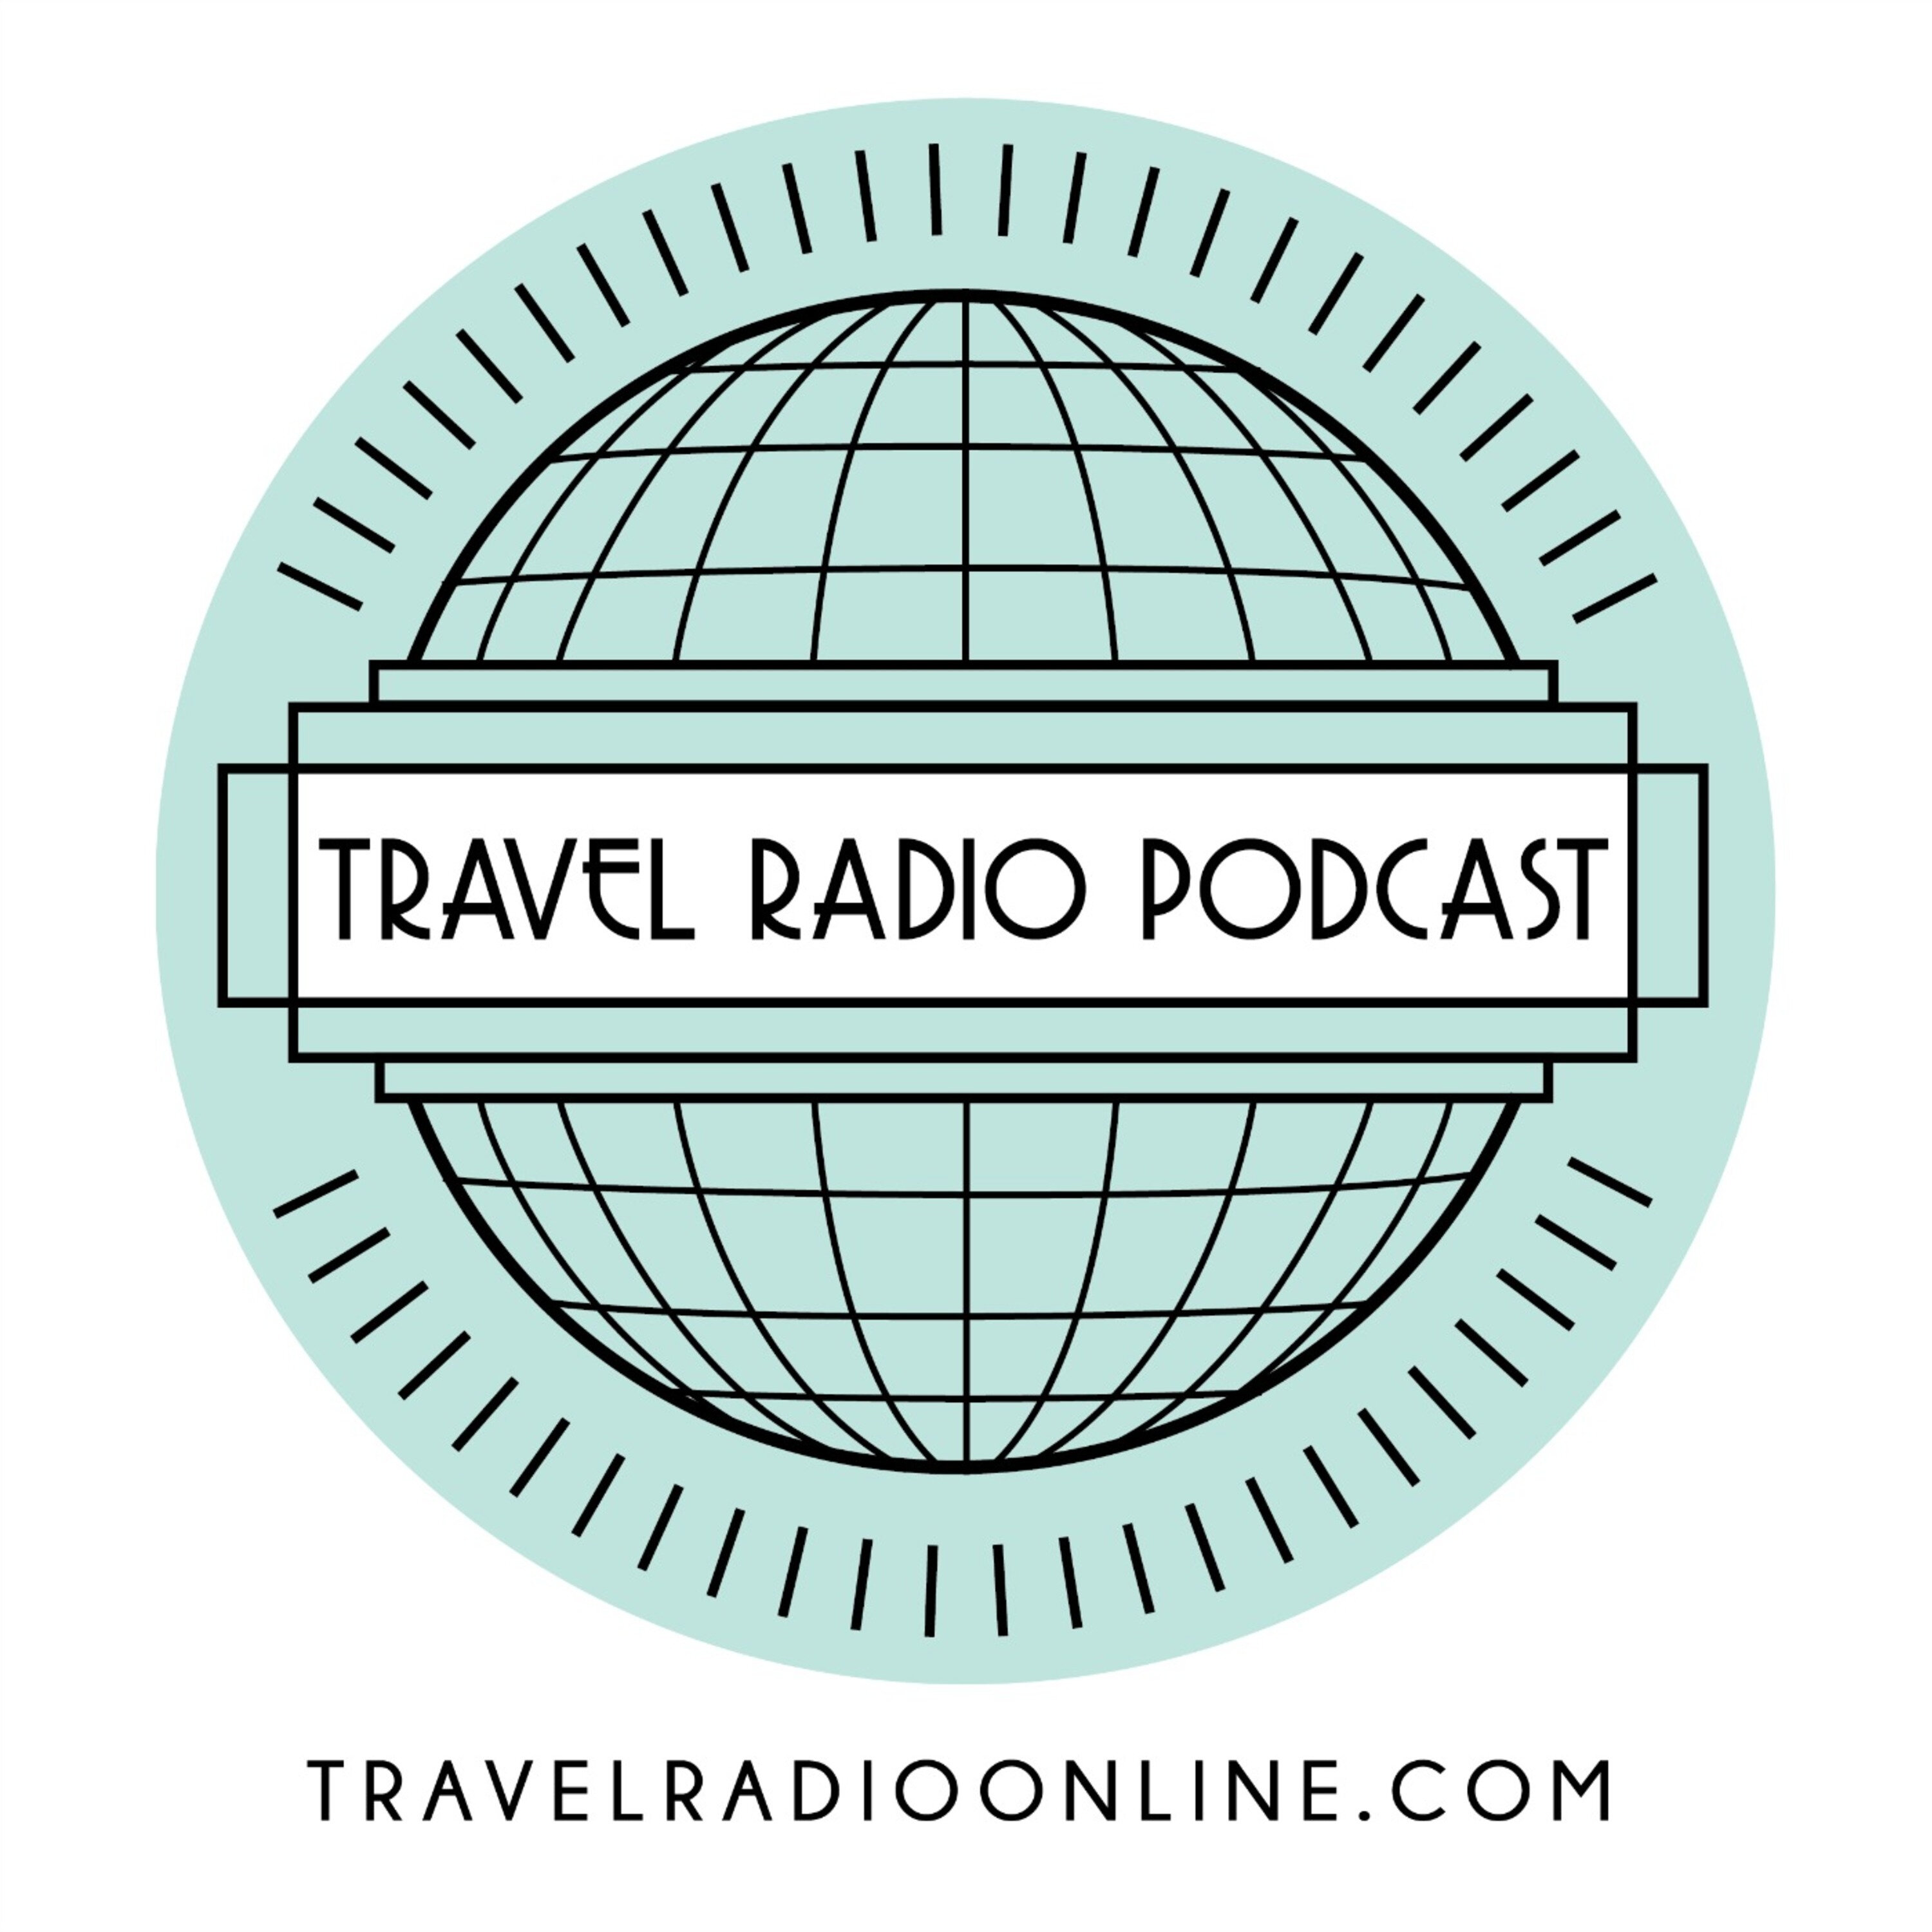 Artwork for podcast Travel Radio Podcast